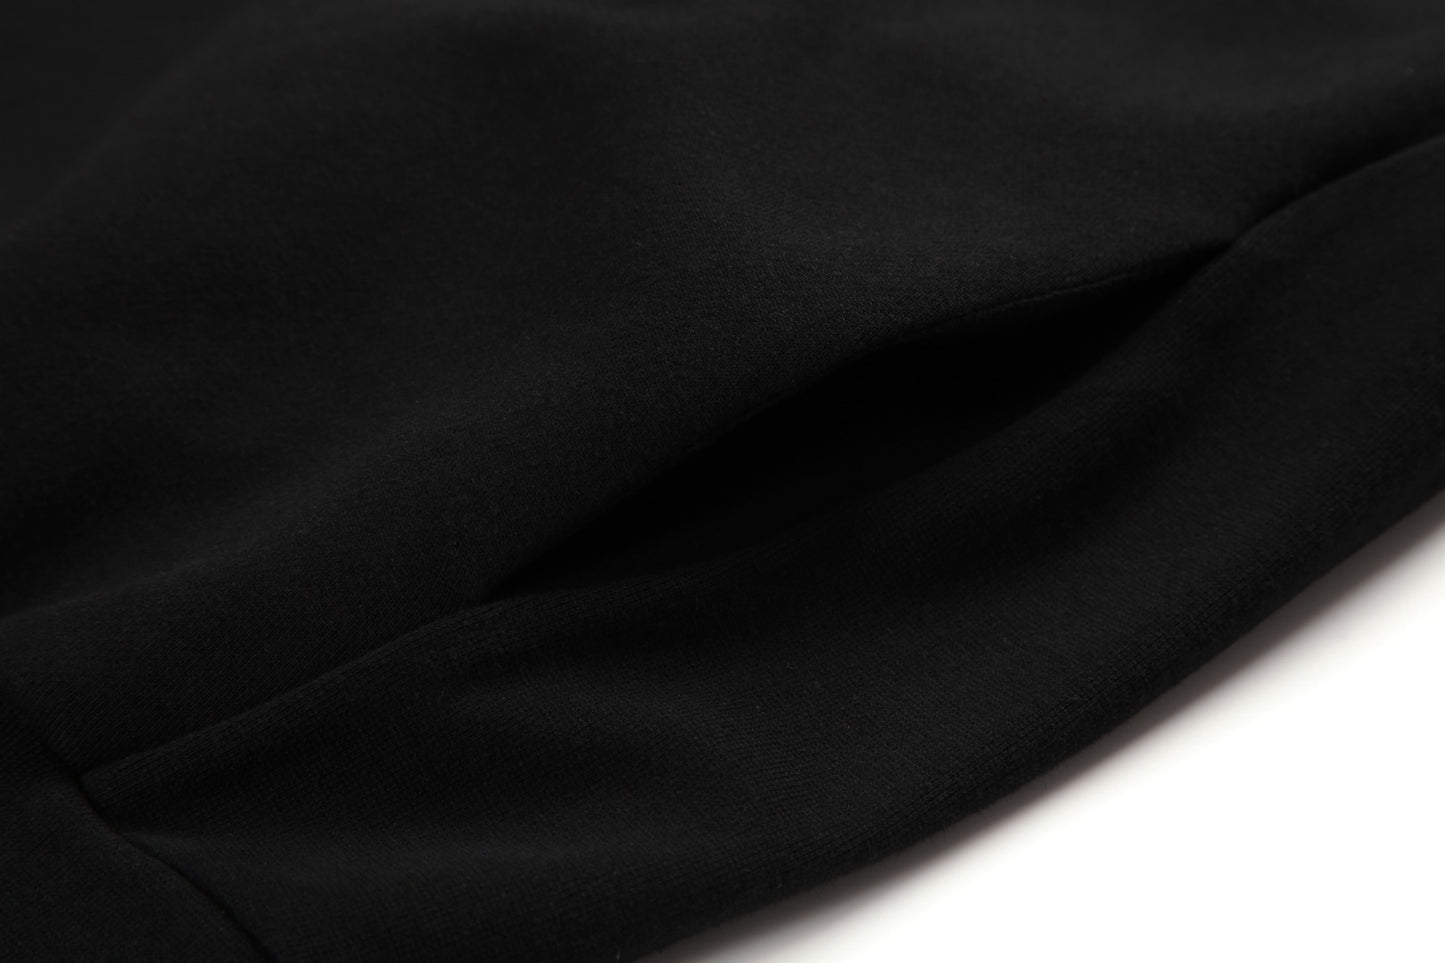 세나 / FOG 시즌 8 더블 라인 쿨 블랙 라미네이트 프린트 스웨트셔츠